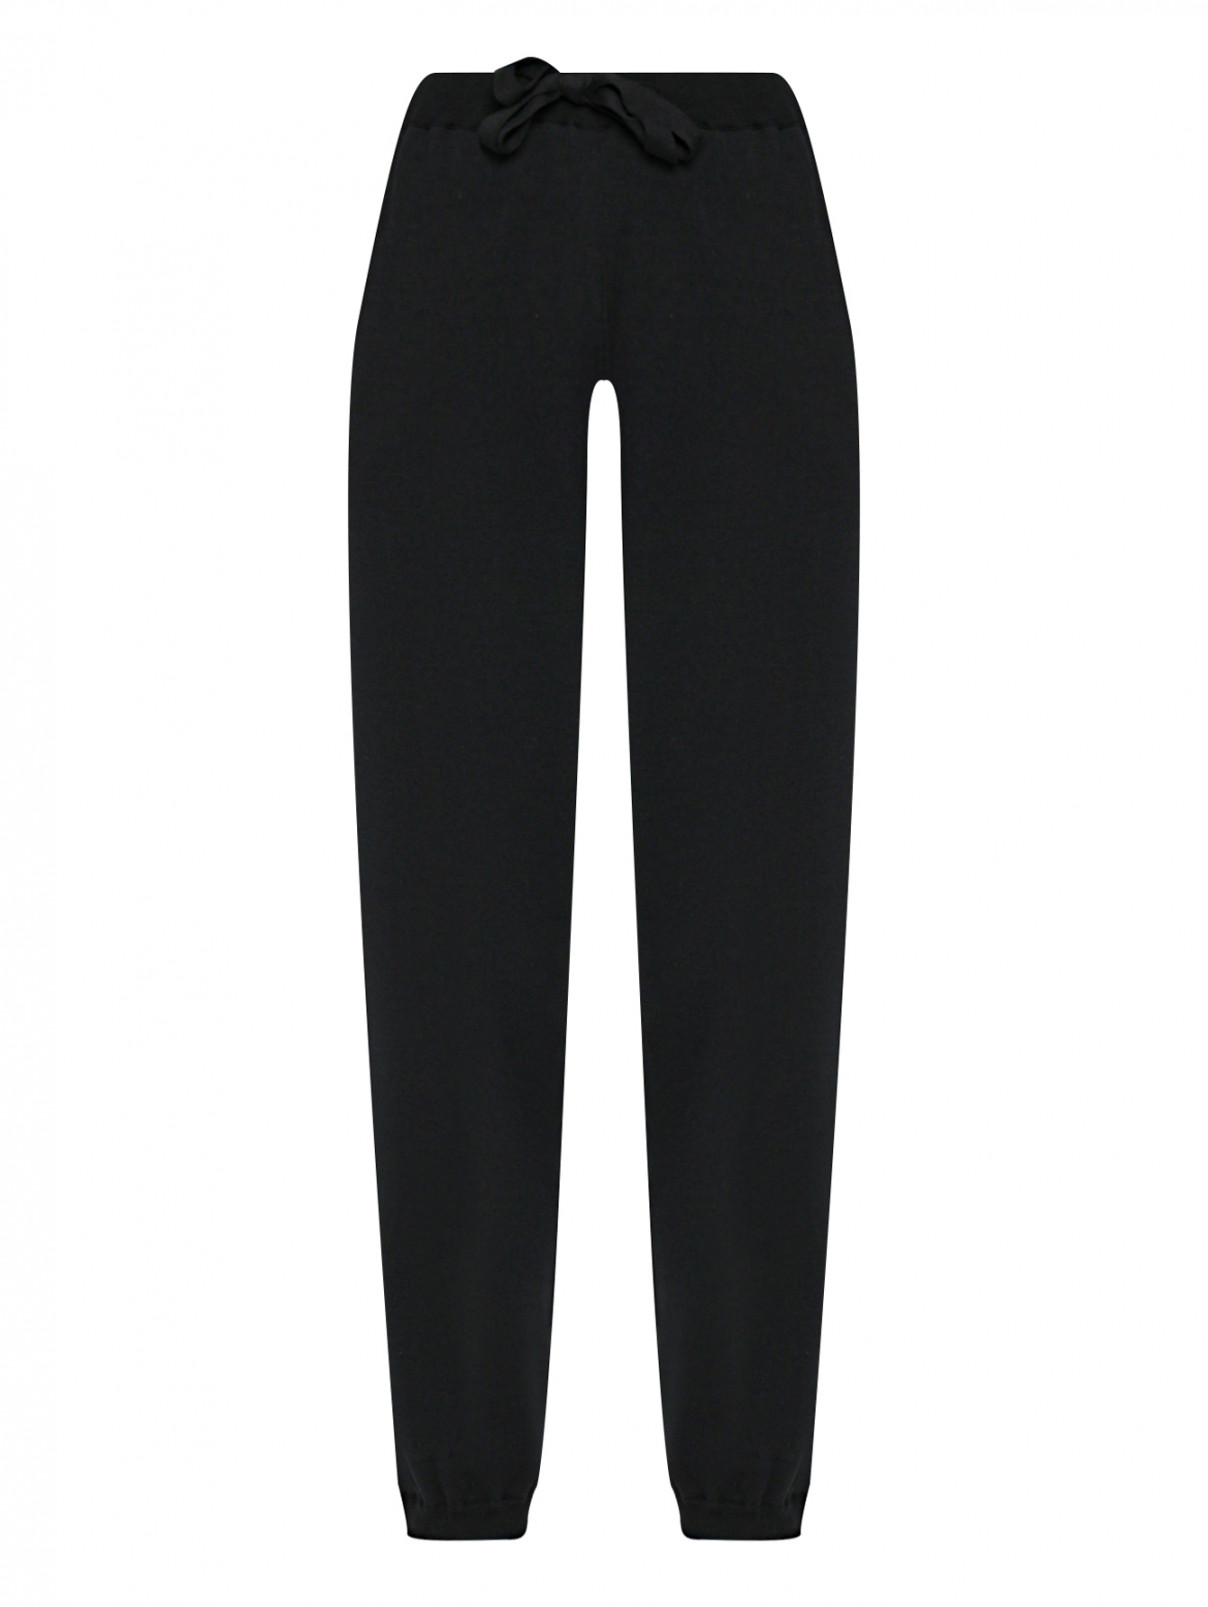 Трикотажные брюки на резинке MRZ  –  Общий вид  – Цвет:  Черный